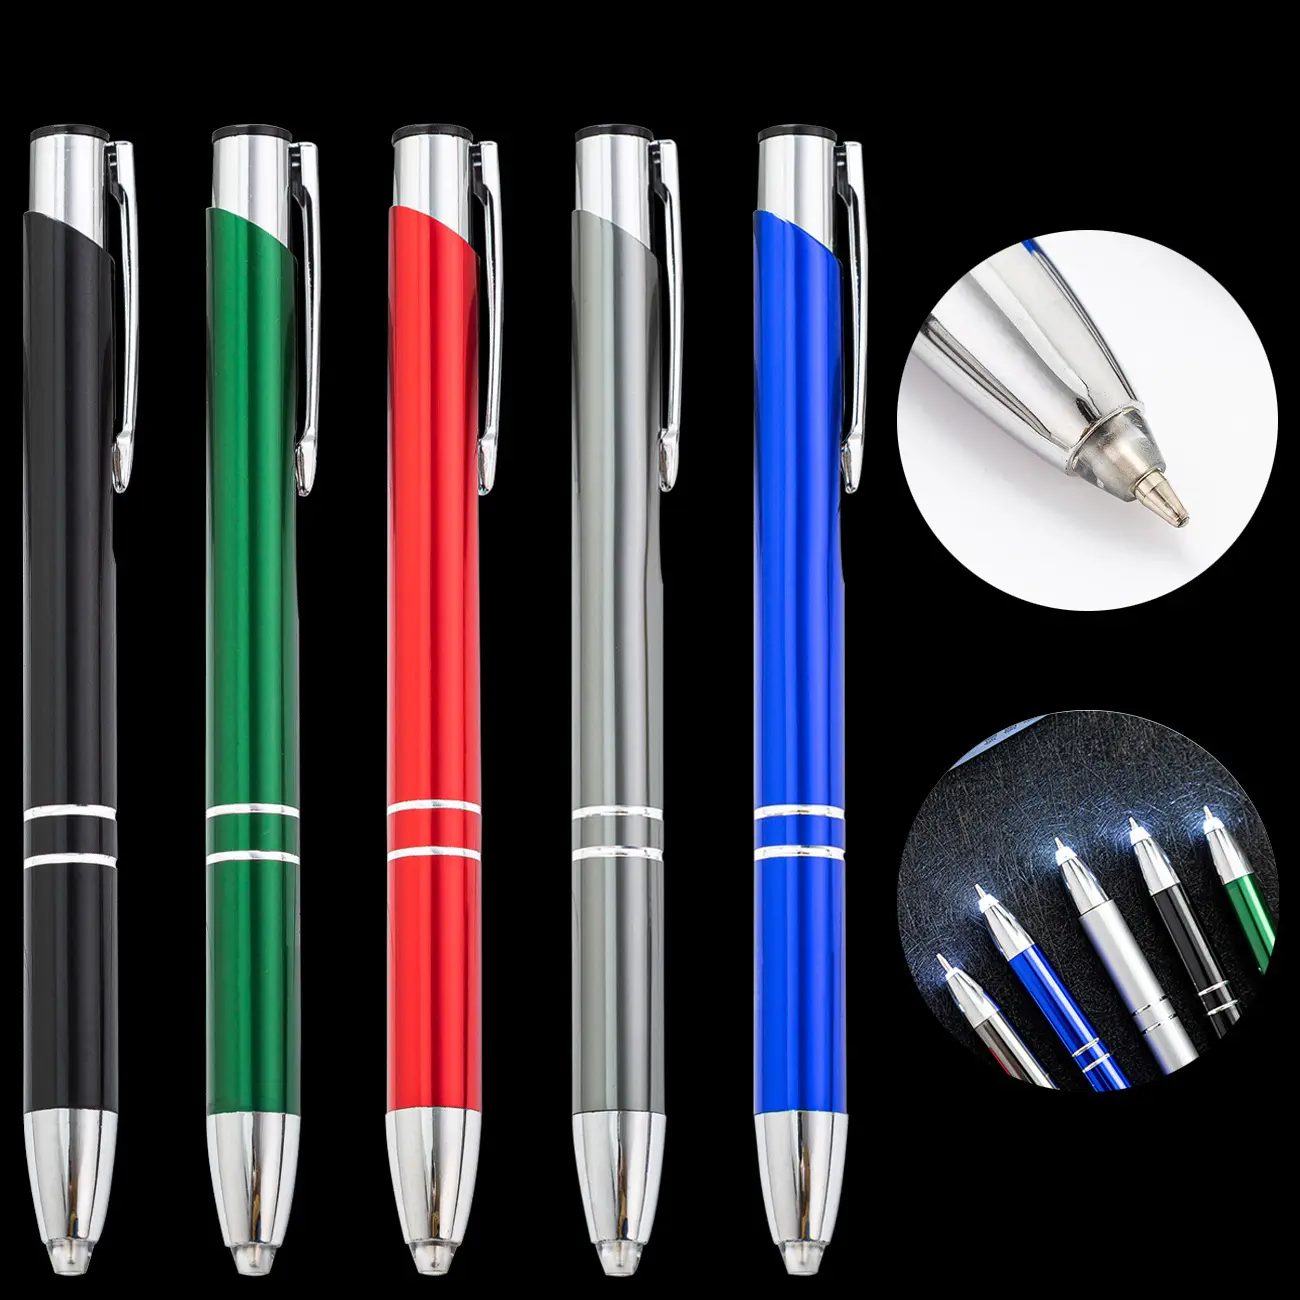 맞춤형 레이저 각인 로고가 있는 LED 라이트 업 팁 메탈 스타일러스 볼펜-펜 팁에 라이트가 있는 최고급 스타일러스 메탈 볼펜